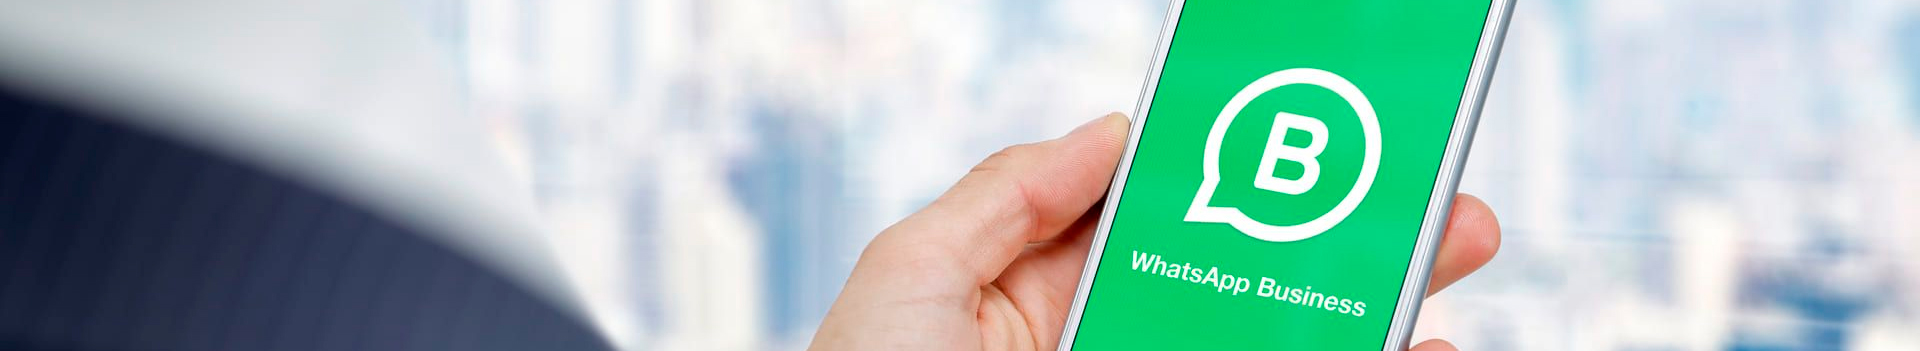 WhatsApp Corporativo: como melhorar a experiência com segurança